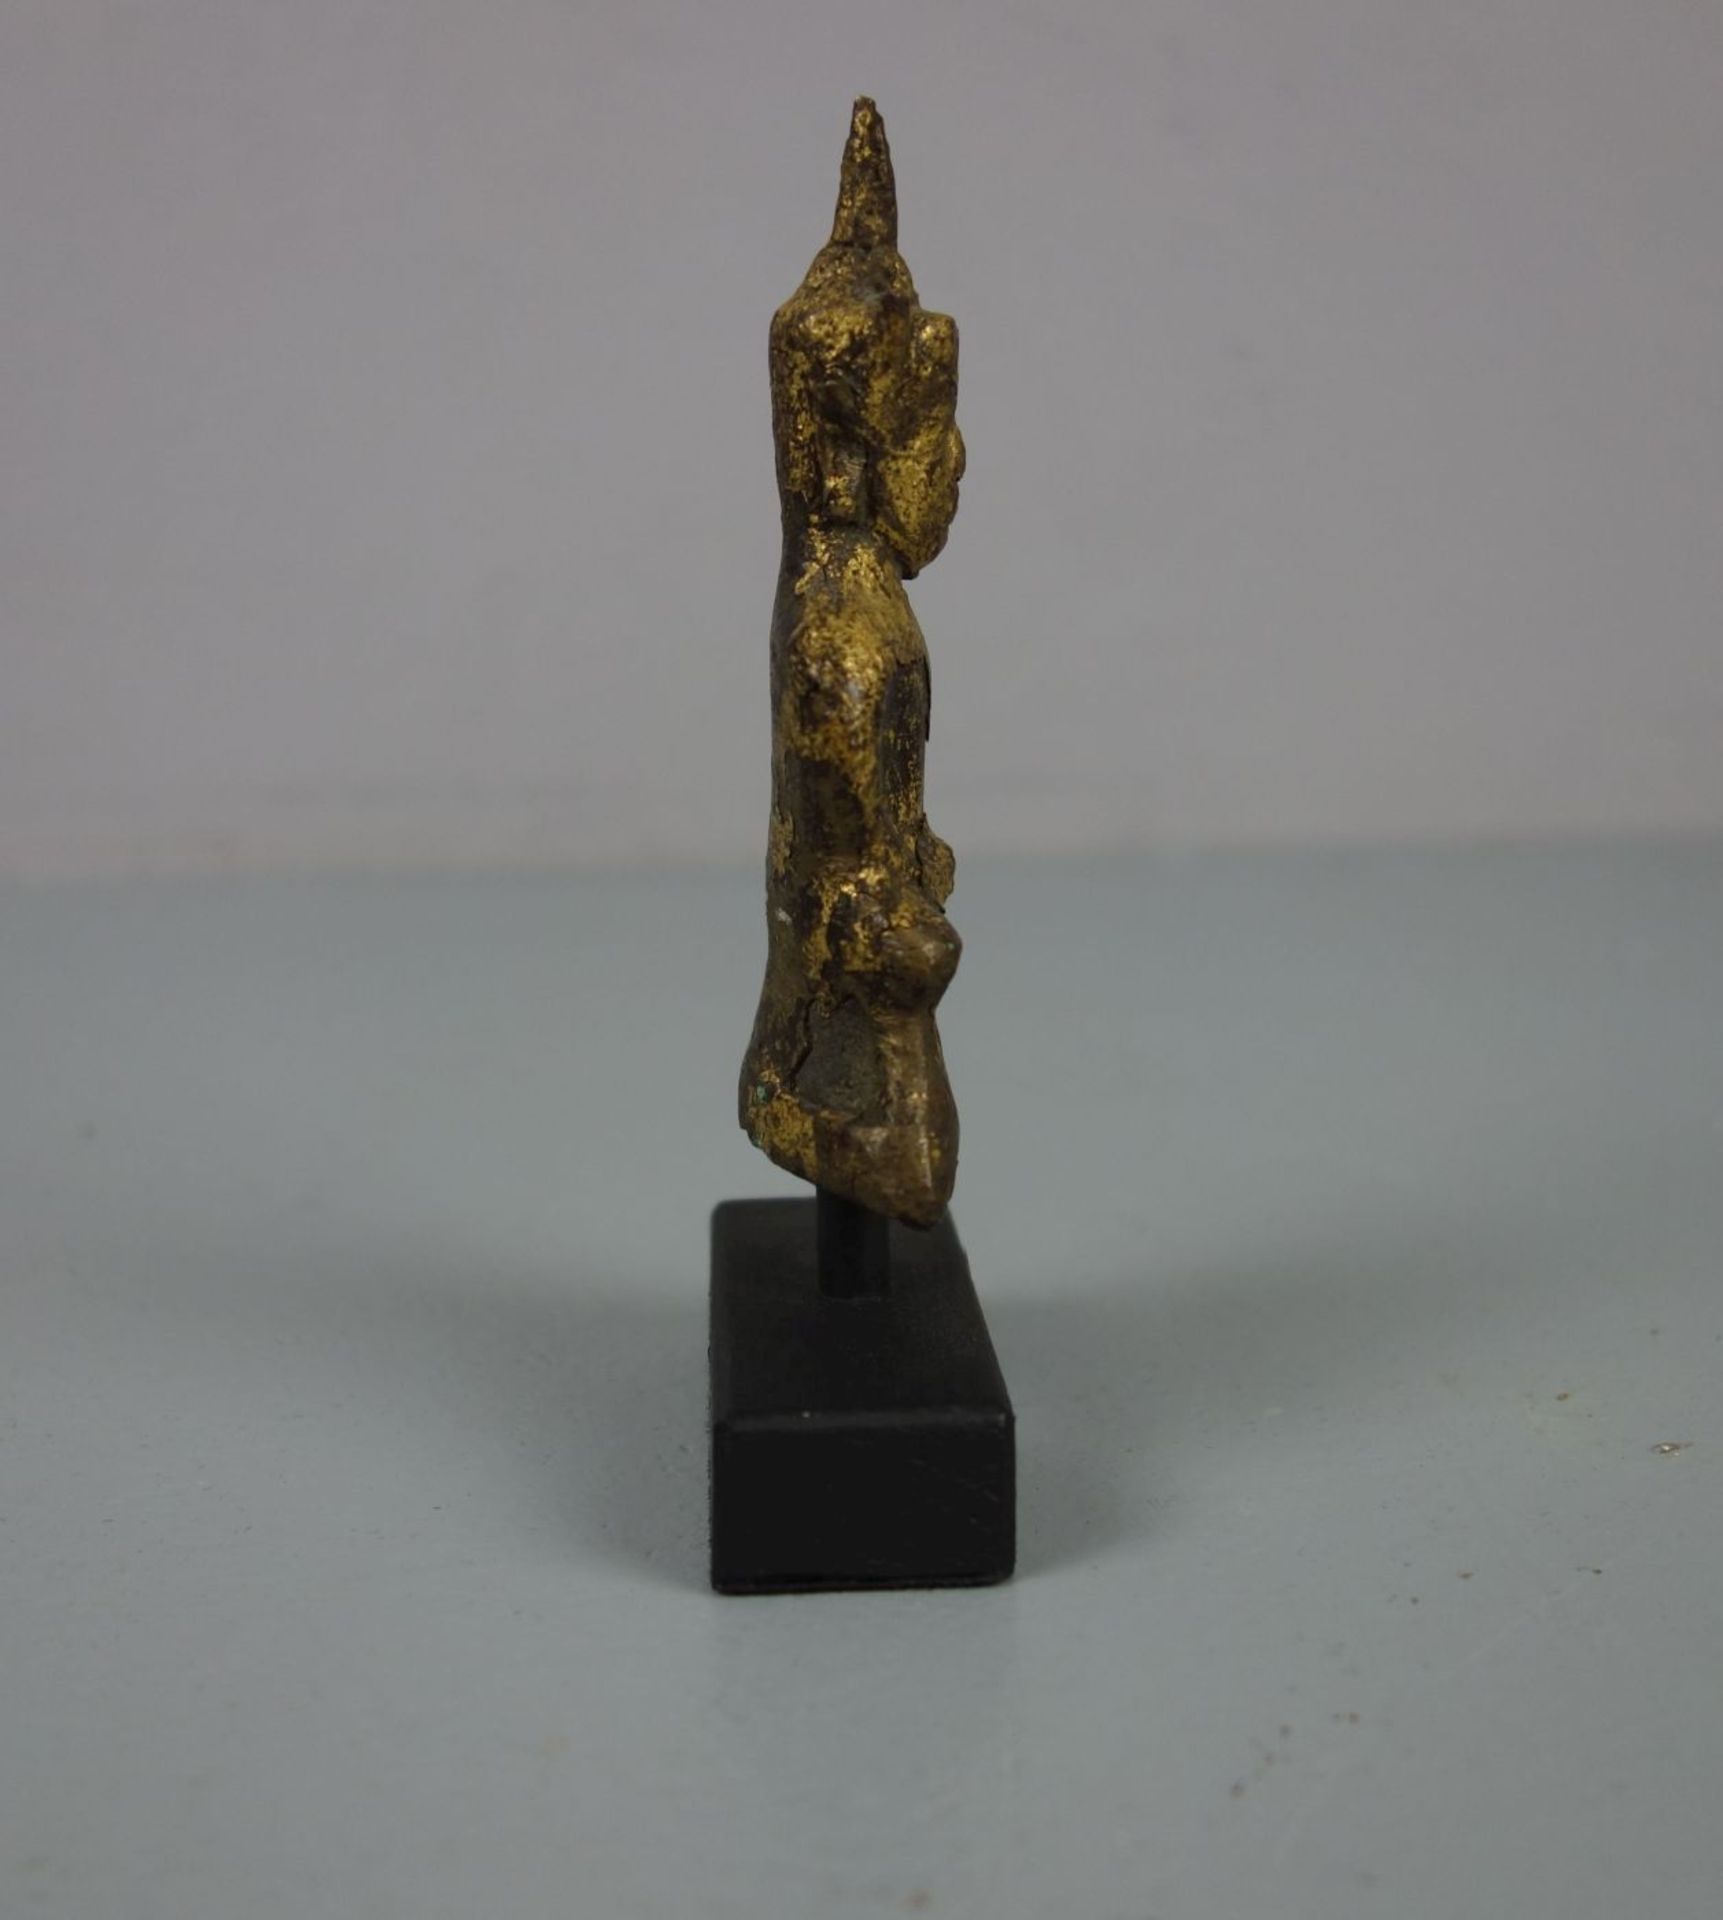 KLEINER BUDDHA AUF HOLZPOSTAMENT, Thailand, 18. Jh., Bronze mit goldfarbener Patinierung. Ein in der - Bild 4 aus 4